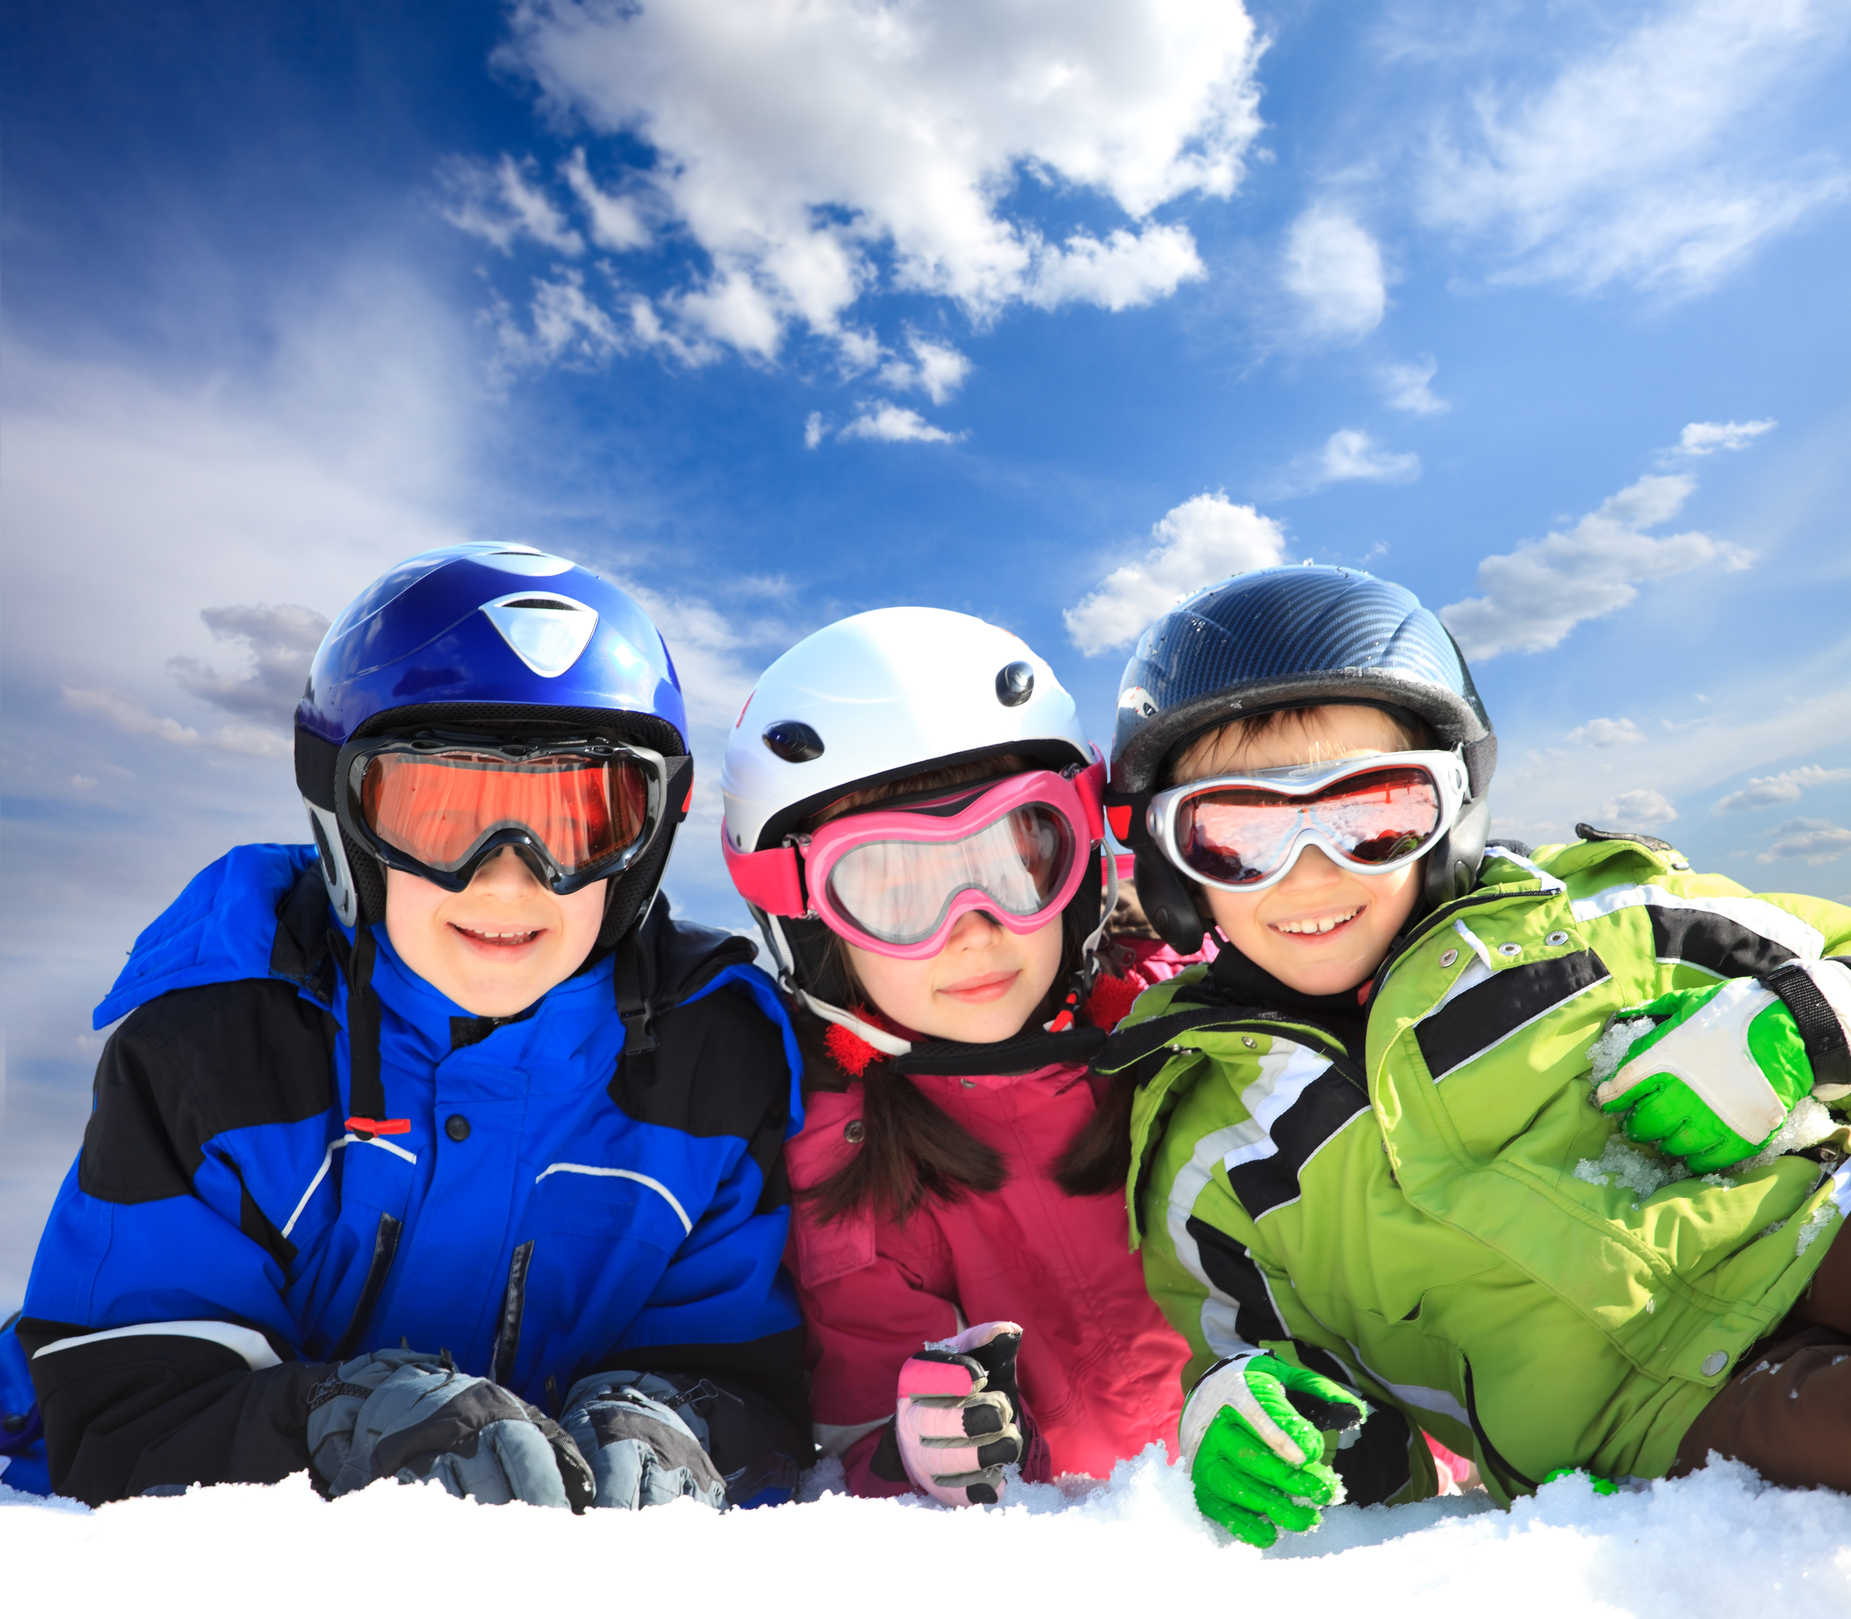 Gafas de esquí y Snowboard para hombre y mujer, lentes de